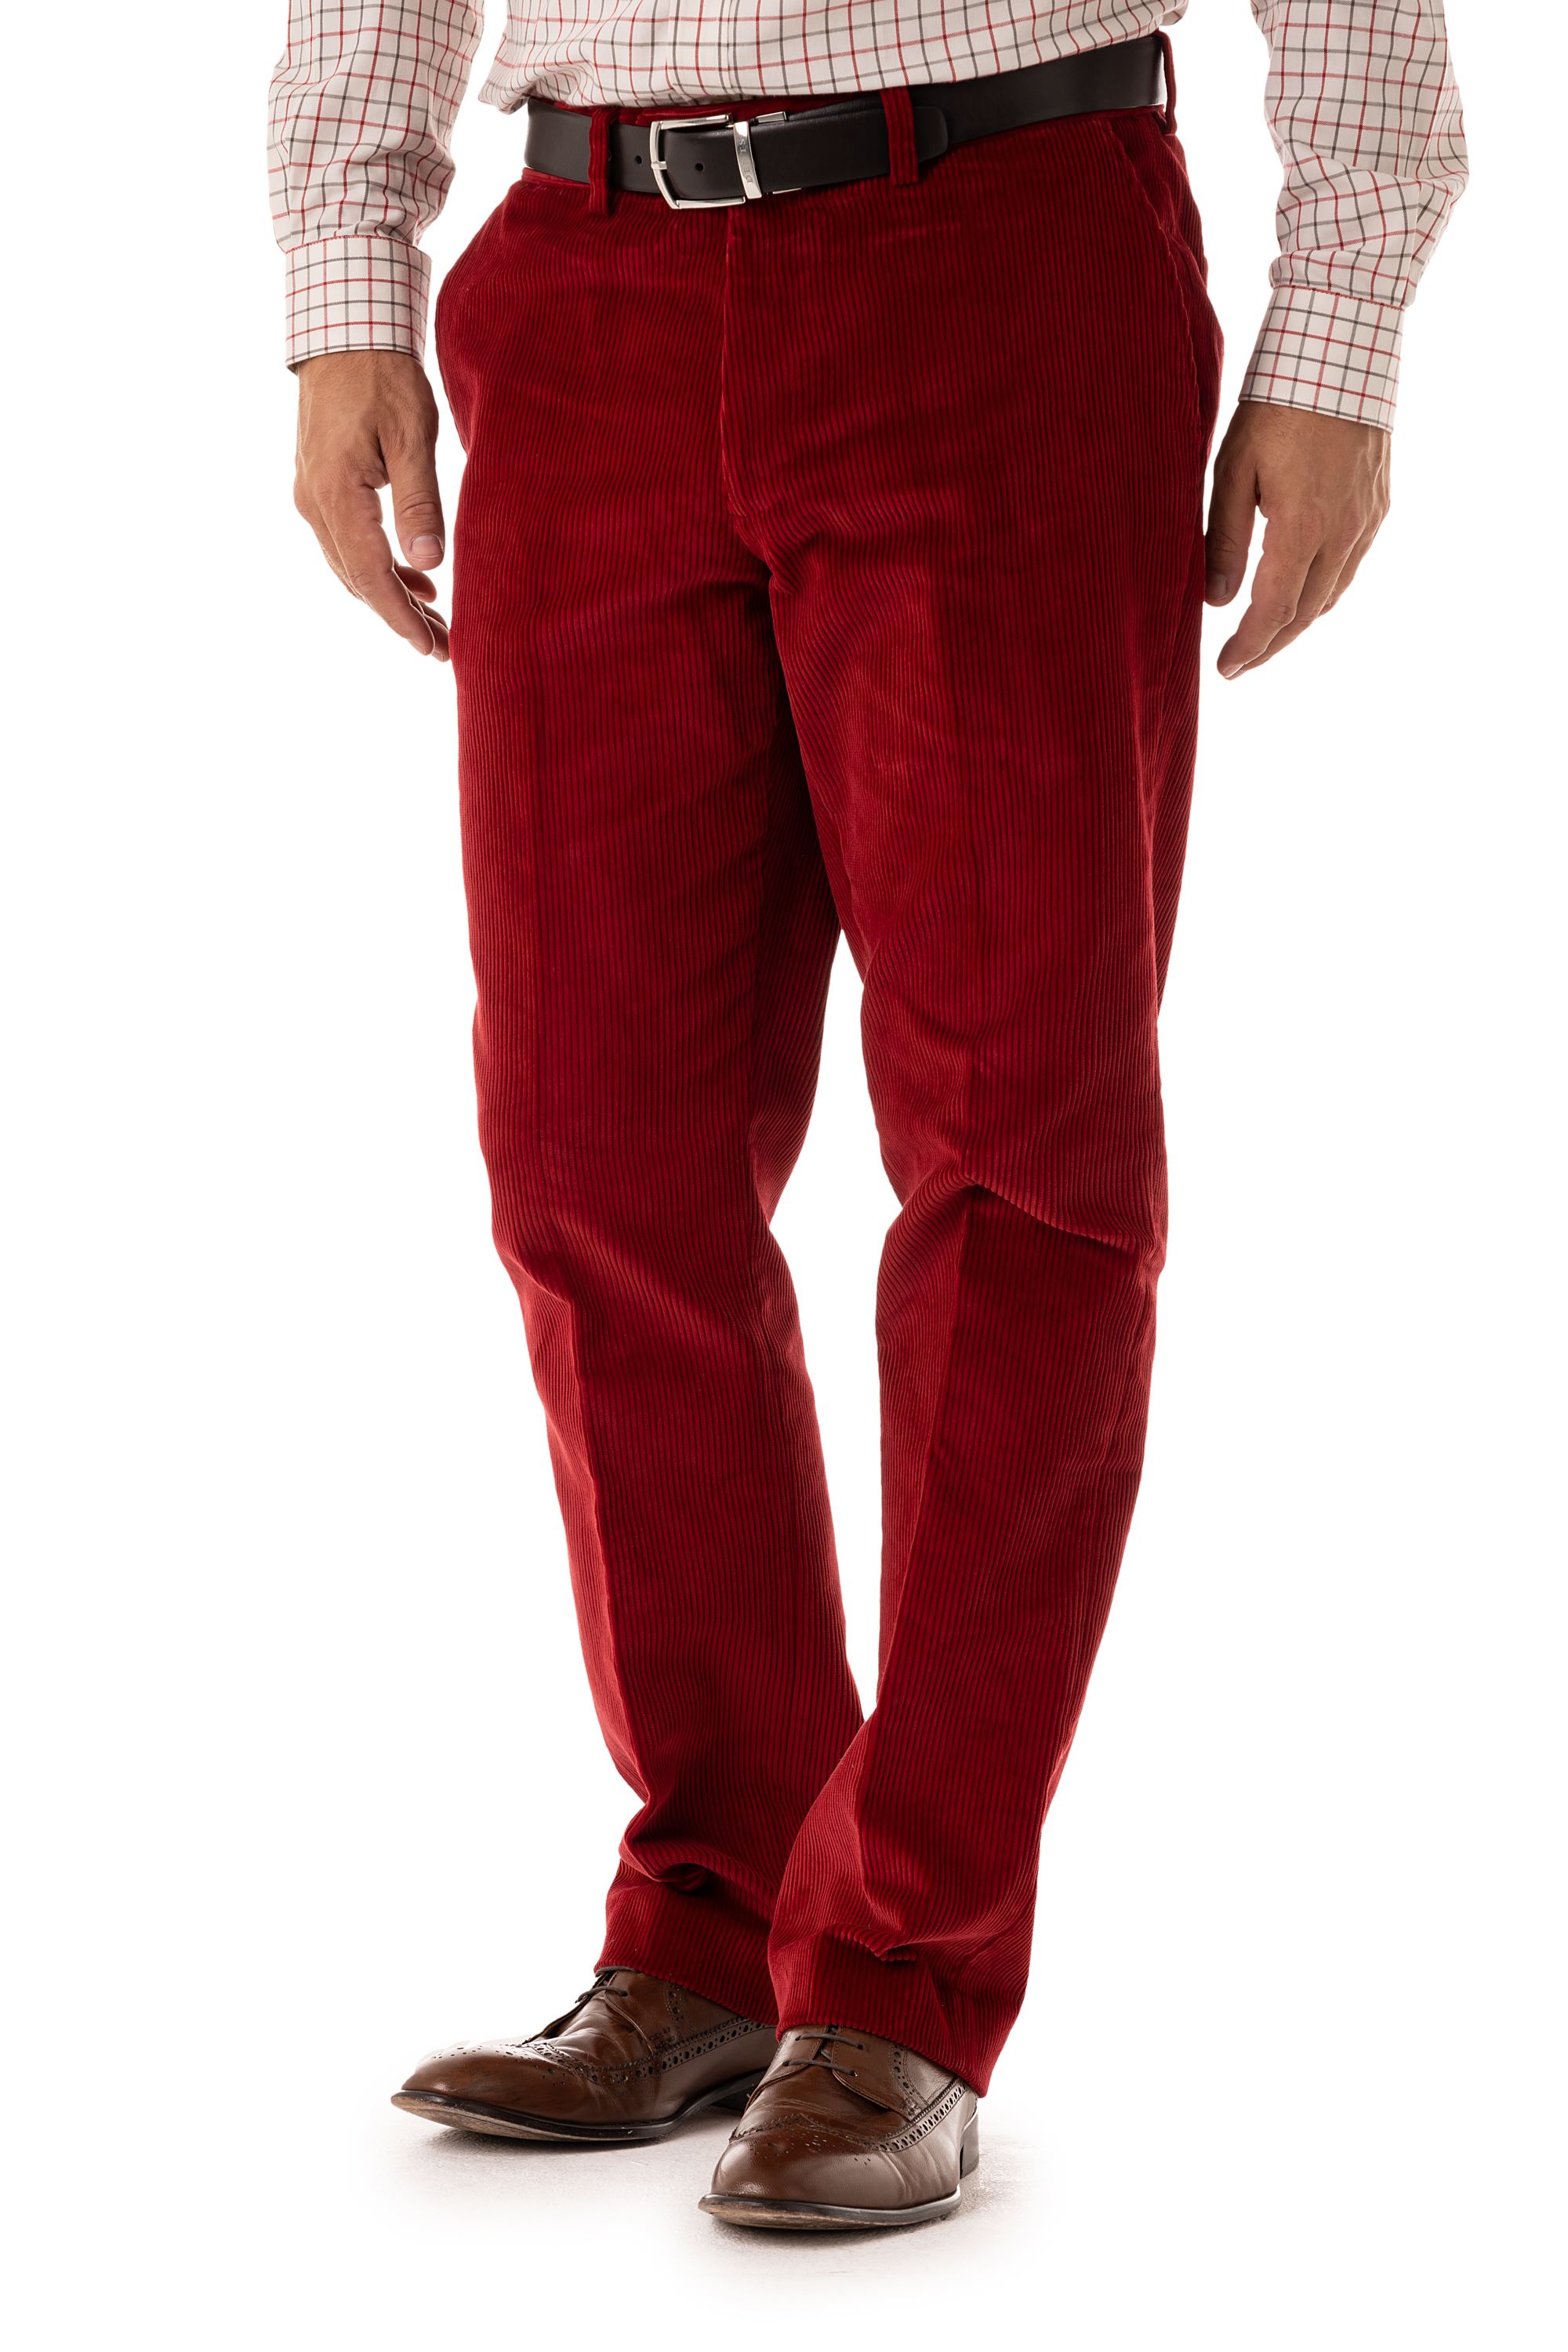 Hampton Poppy Red Cord Trouser | Gurteen Menswear